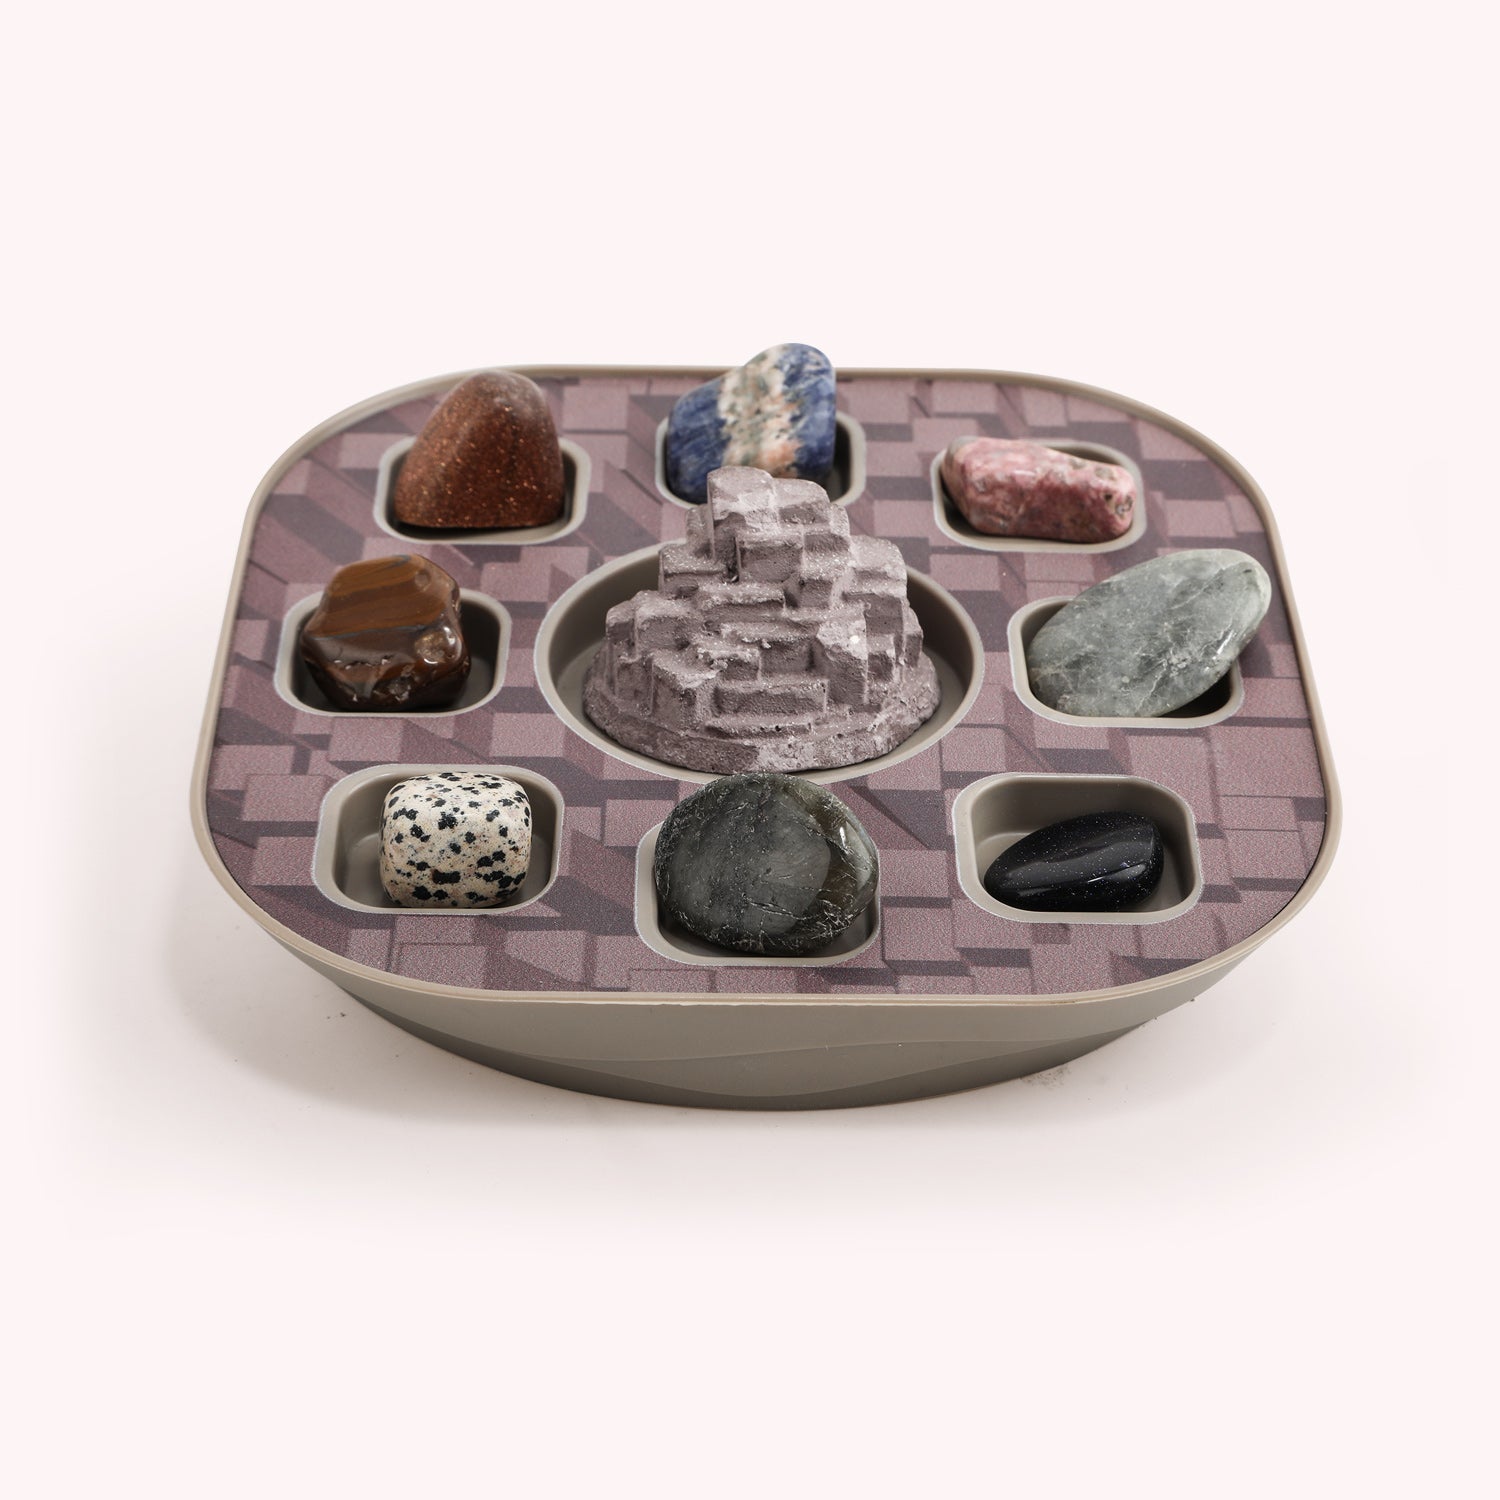 Wenn die Kinder alle acht Edelsteine gefunden haben, können sie ihre Sammlung von Edelsteinen auf der Rückseite des Sockels präsentieren.